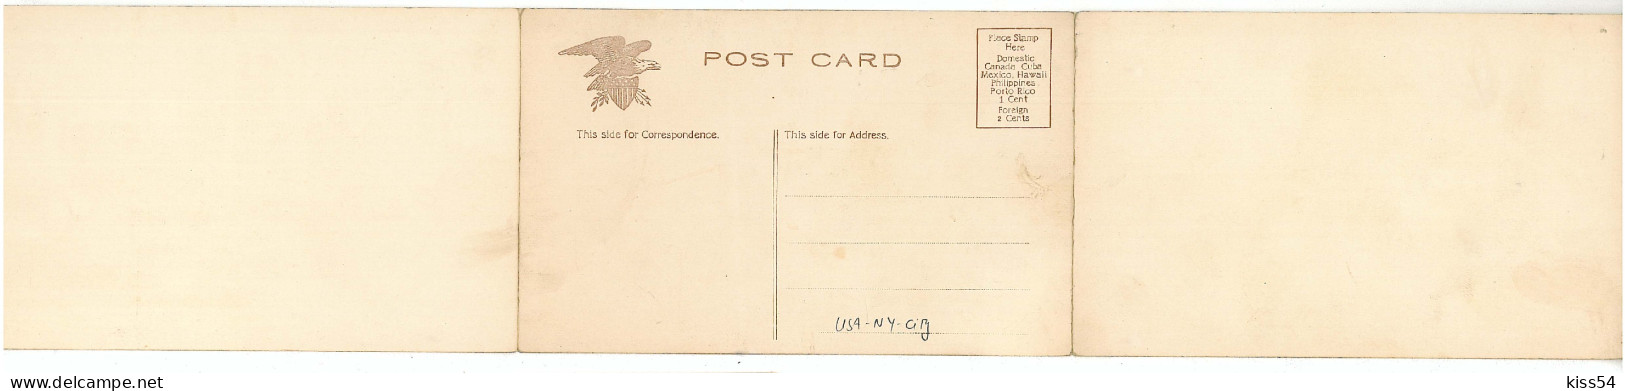 US 11 - 7363 NEW YORK CITY, USA - 3 Old Postcards - Unused - Panoramische Zichten, Meerdere Zichten